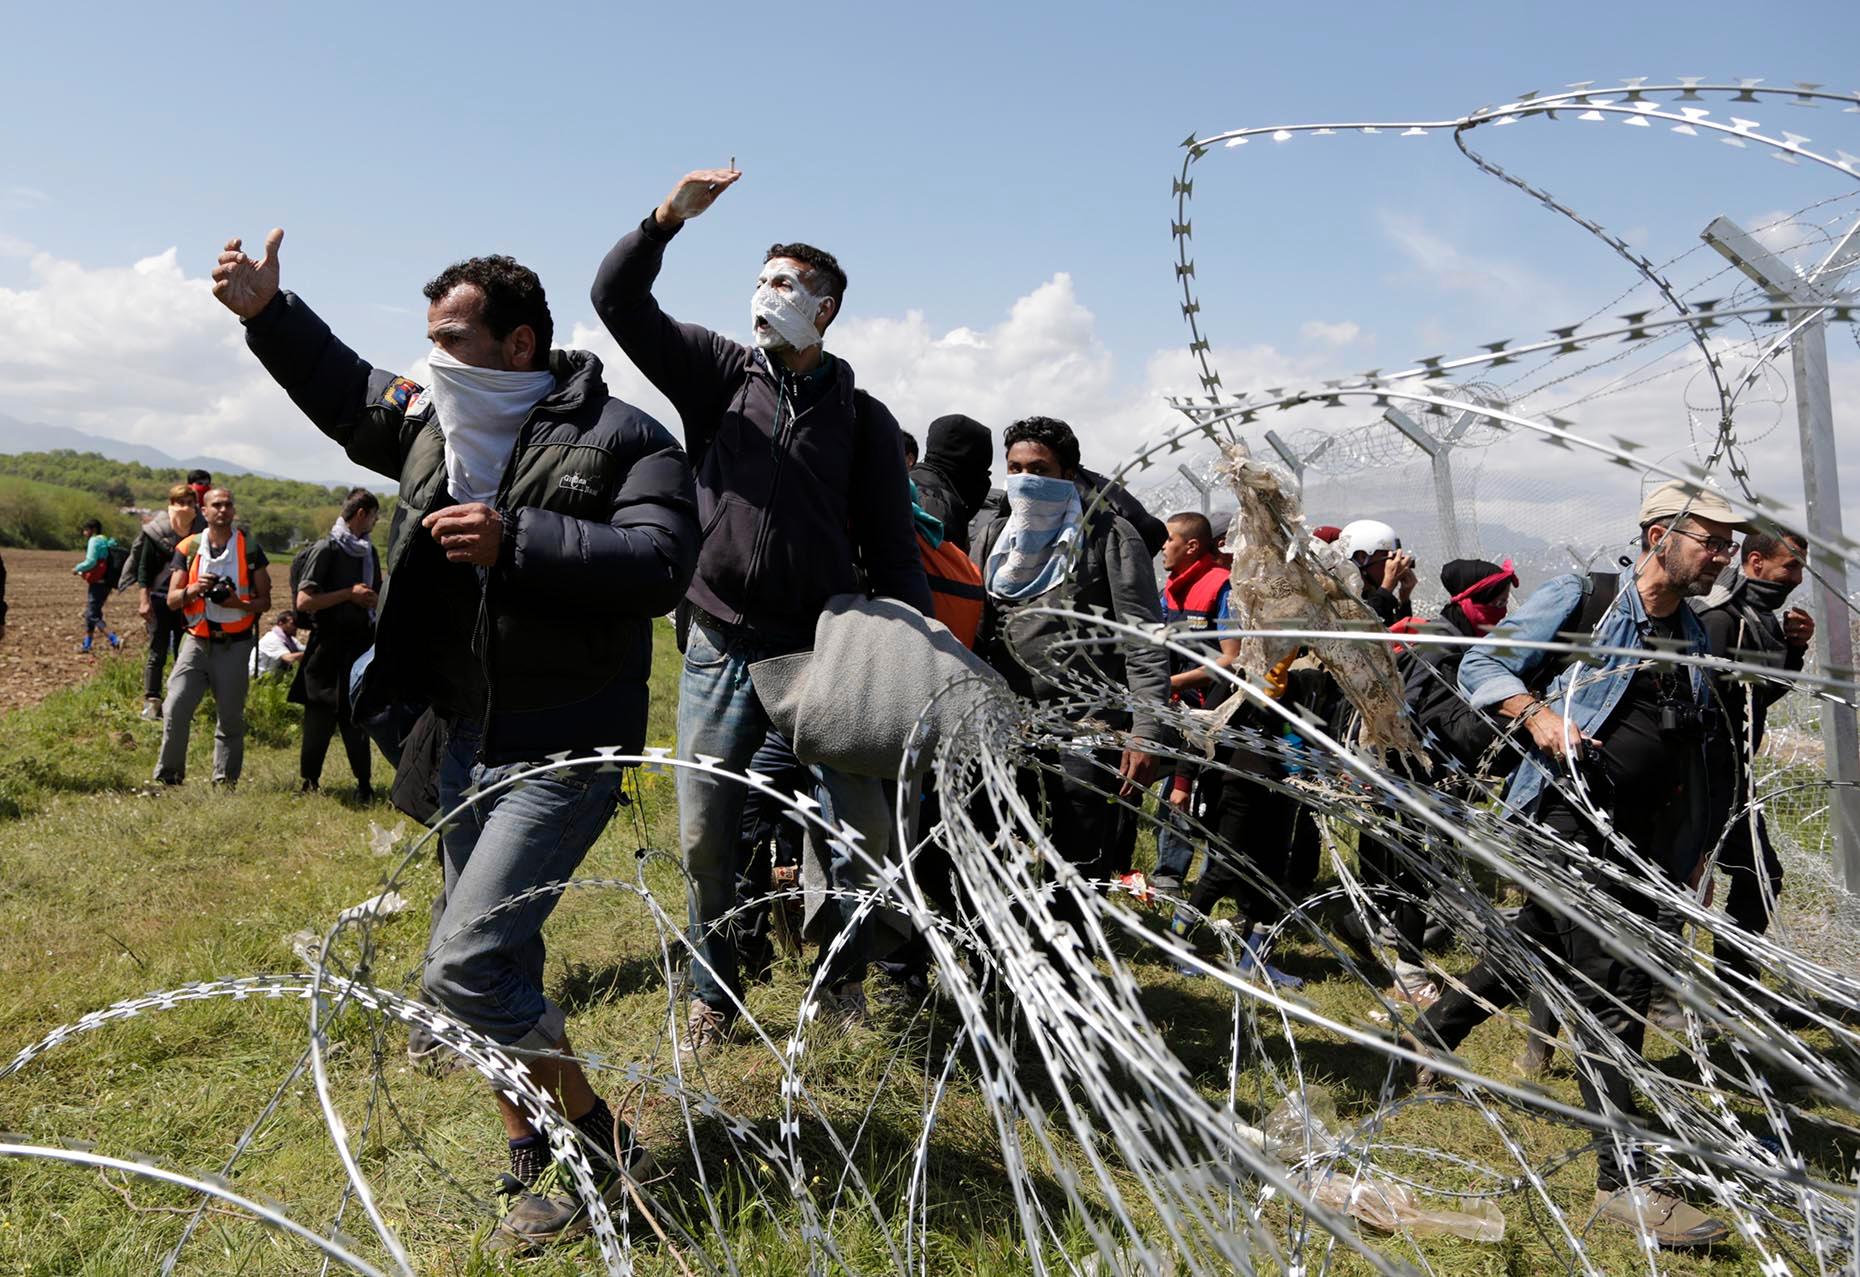 Hundratals migranter skadades på söndagen när de besköts med tårgas vid gränsen mellan Makedonien och Grekland. Den Makedonska polisen sköt mot  flyktingar på den grekiska sidan av gränsen vid övergången Idomeni. Människorna smörjde in sig med tandkräm för att skydda sig mot tårgasen.